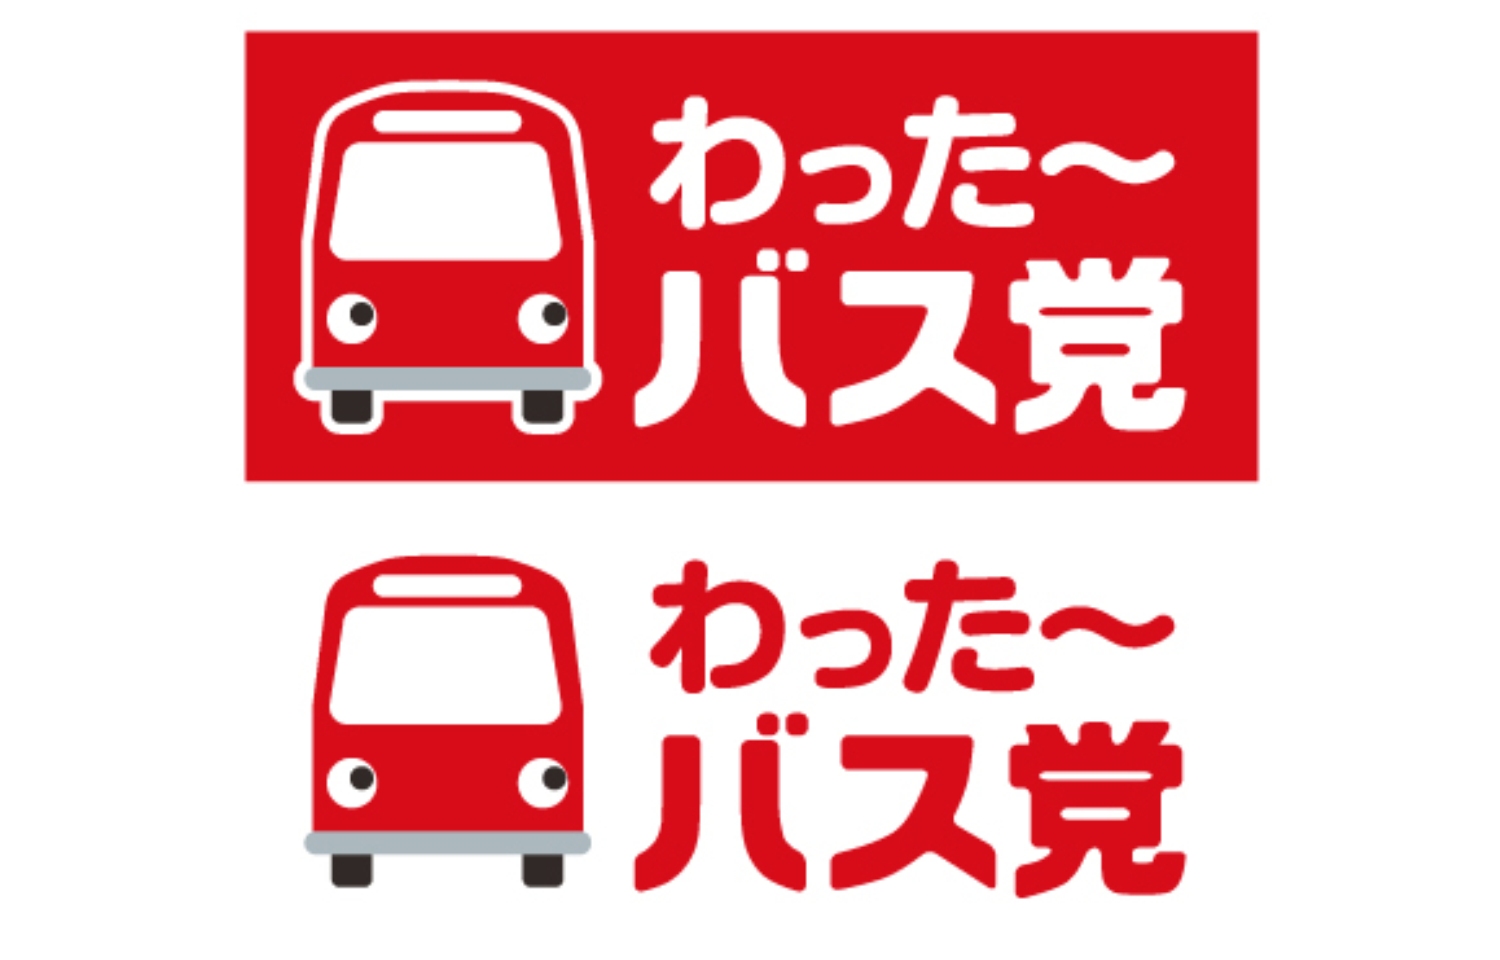 【ロゴ】
沖縄県企画部交通政策課